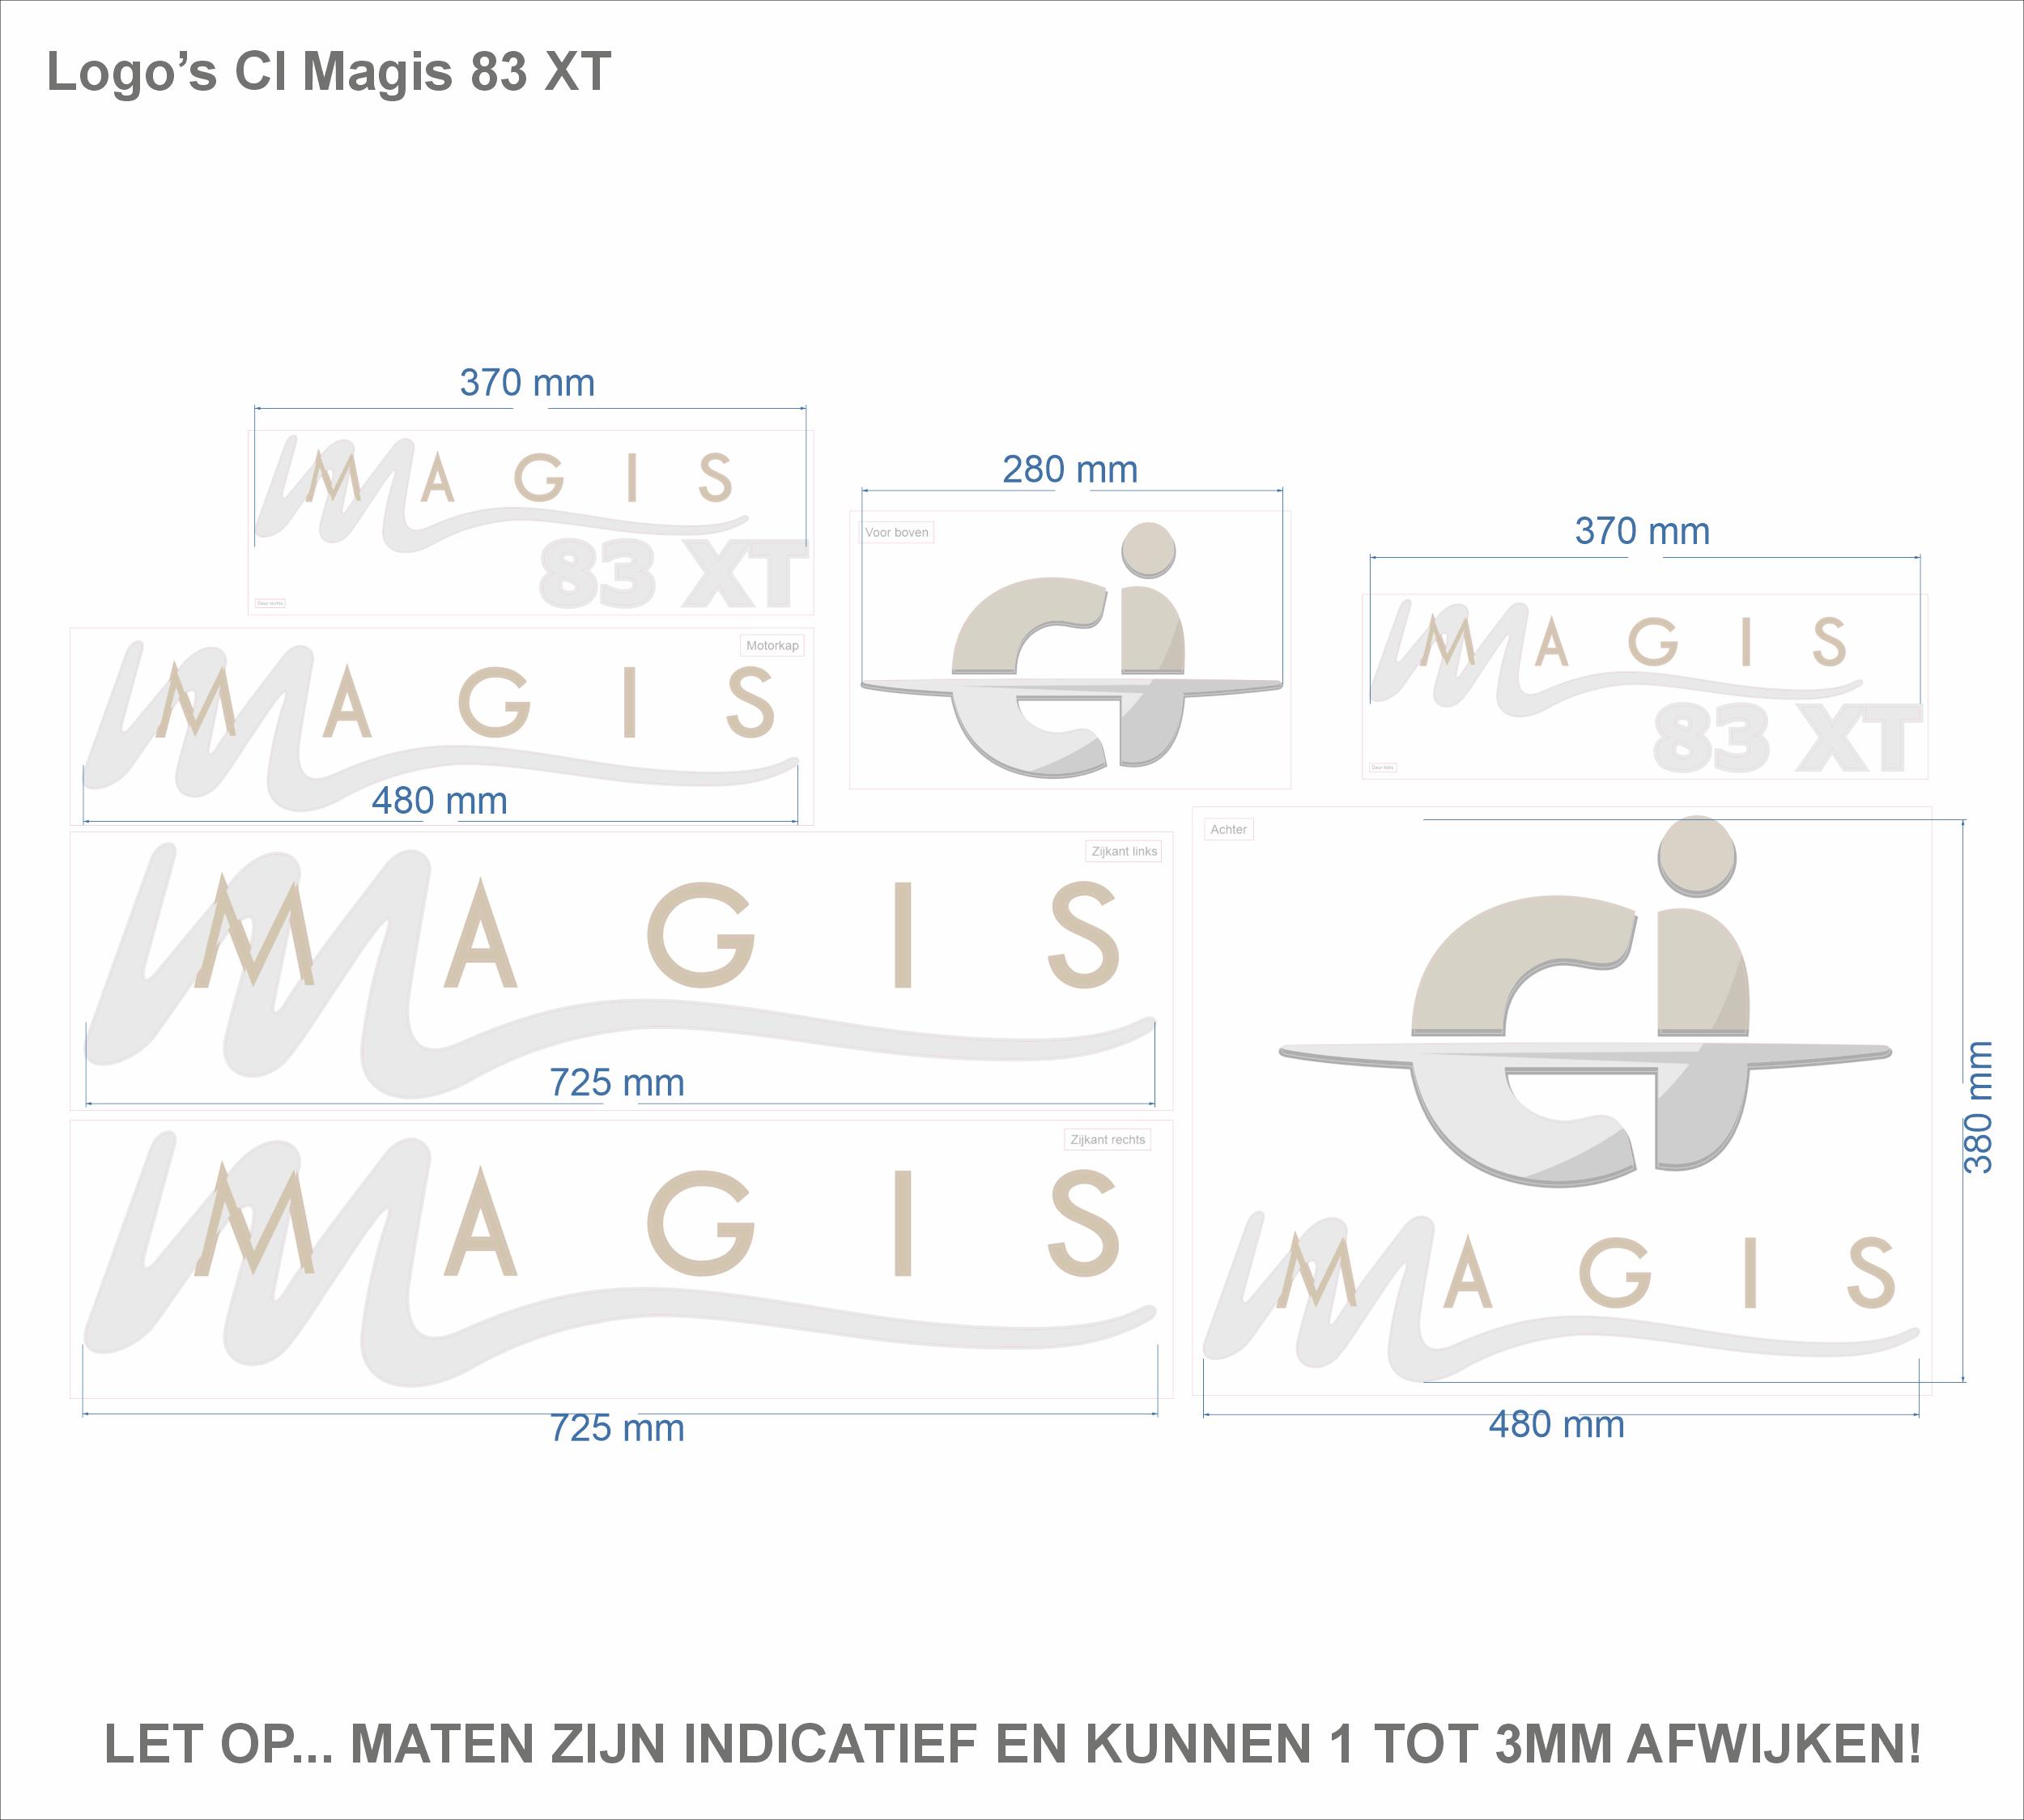 Camper CI Magis 83 XT logostickers